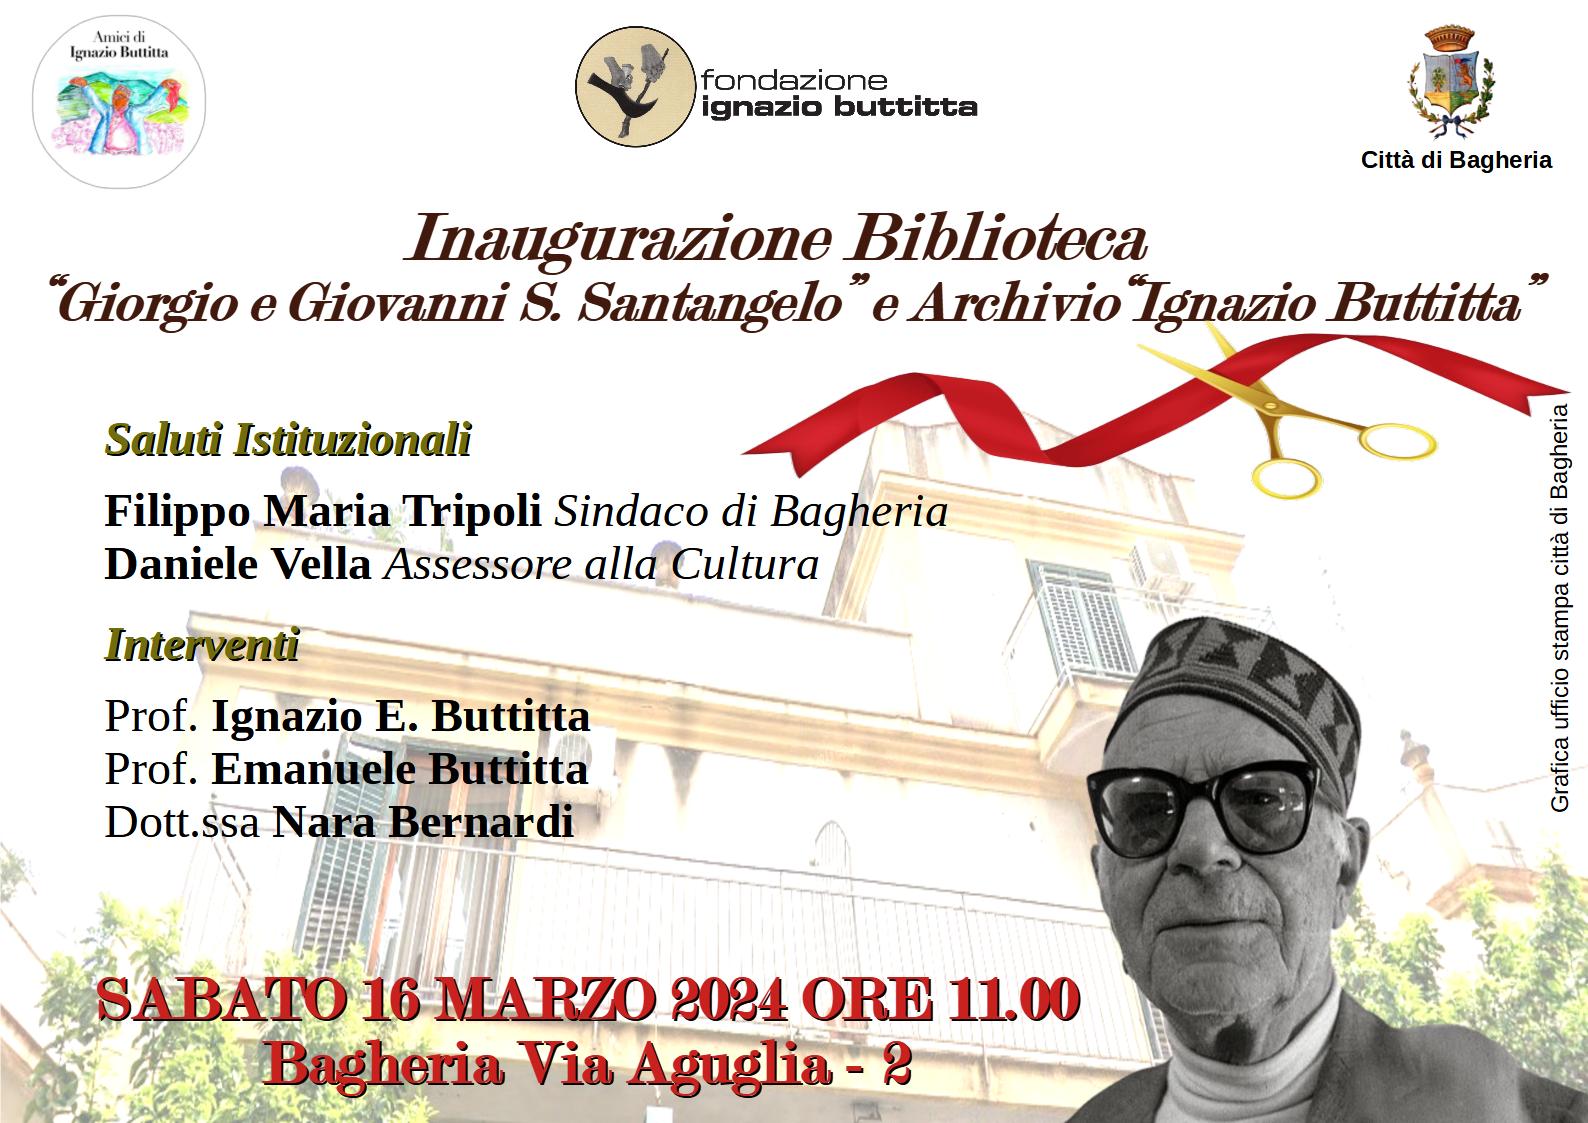 Apre i battenti a Bagheria, in via Aguglia,   la Biblioteca Giorgio e Giovanni S. Santangelo e l'Archivio "Ignazio Buttitta" 